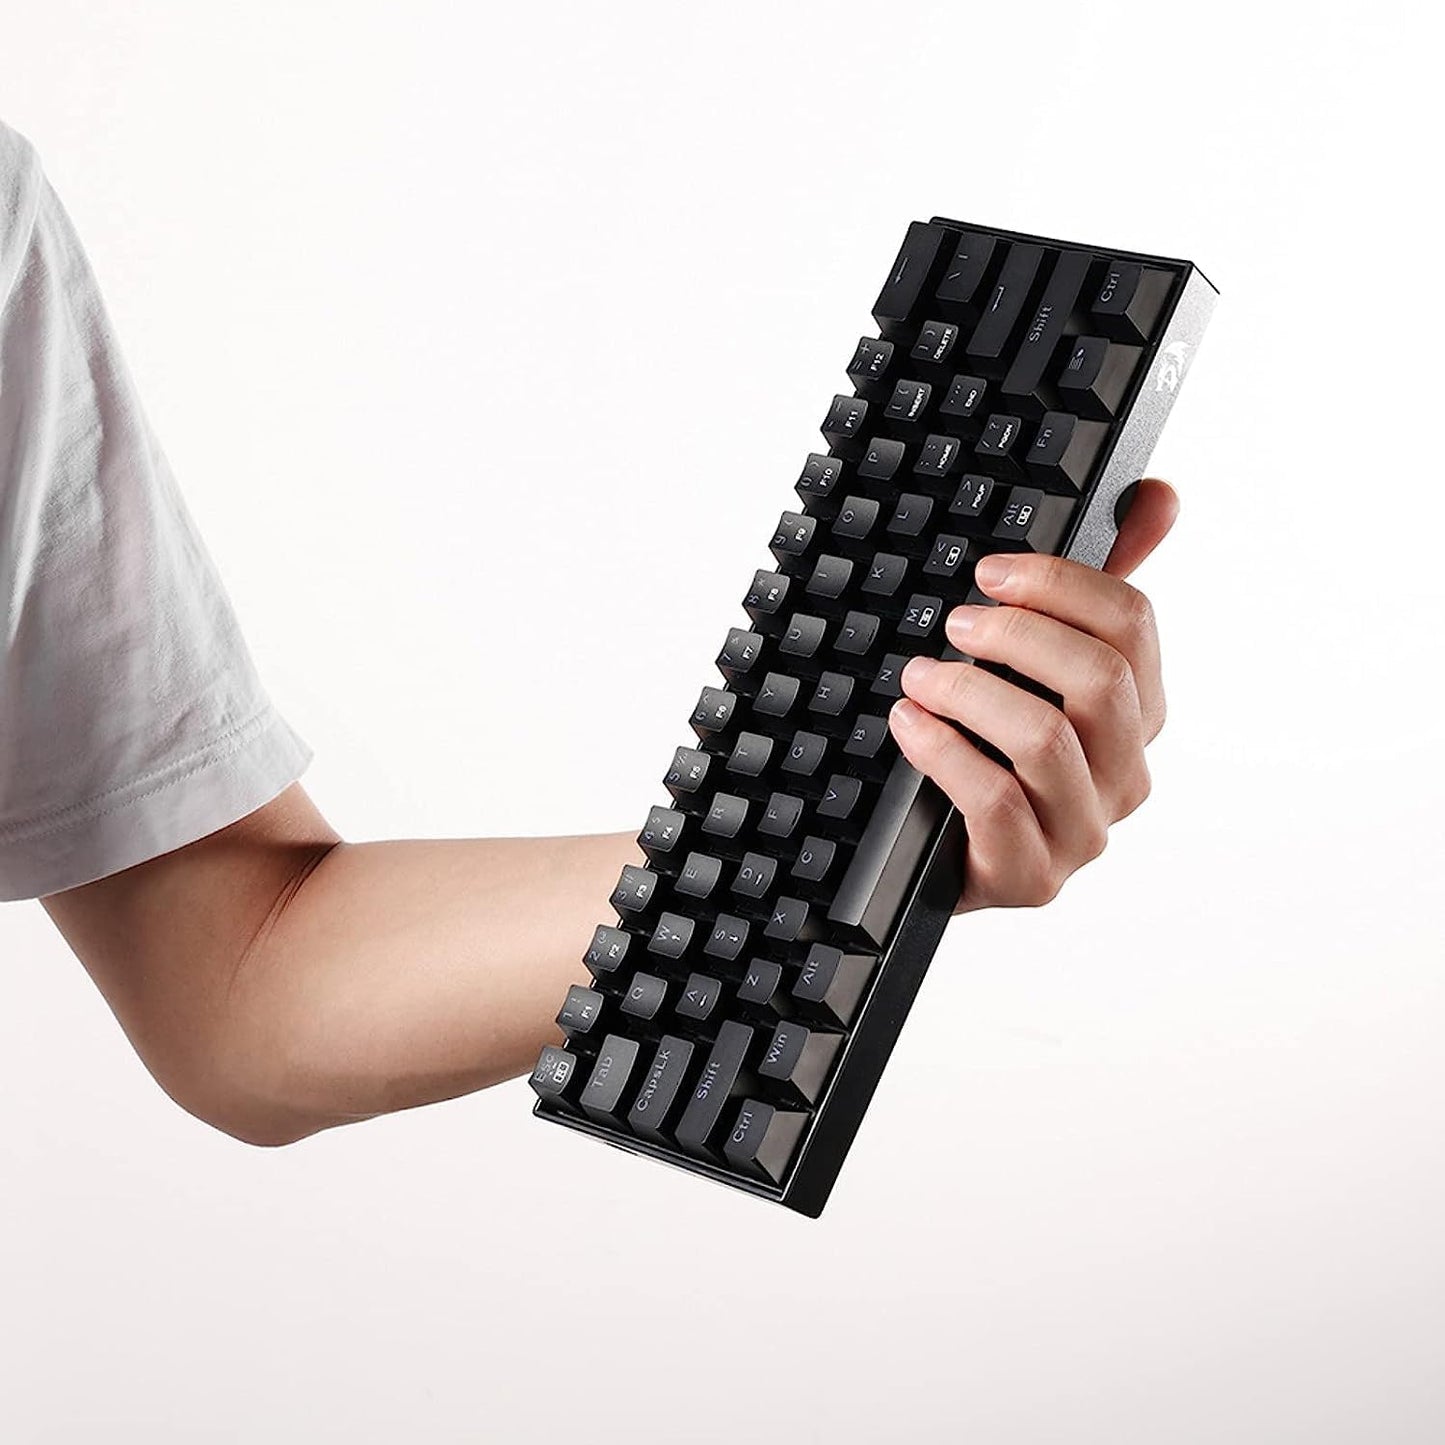 RedDragon K630™ 60% Mechanical RGB Keyboard